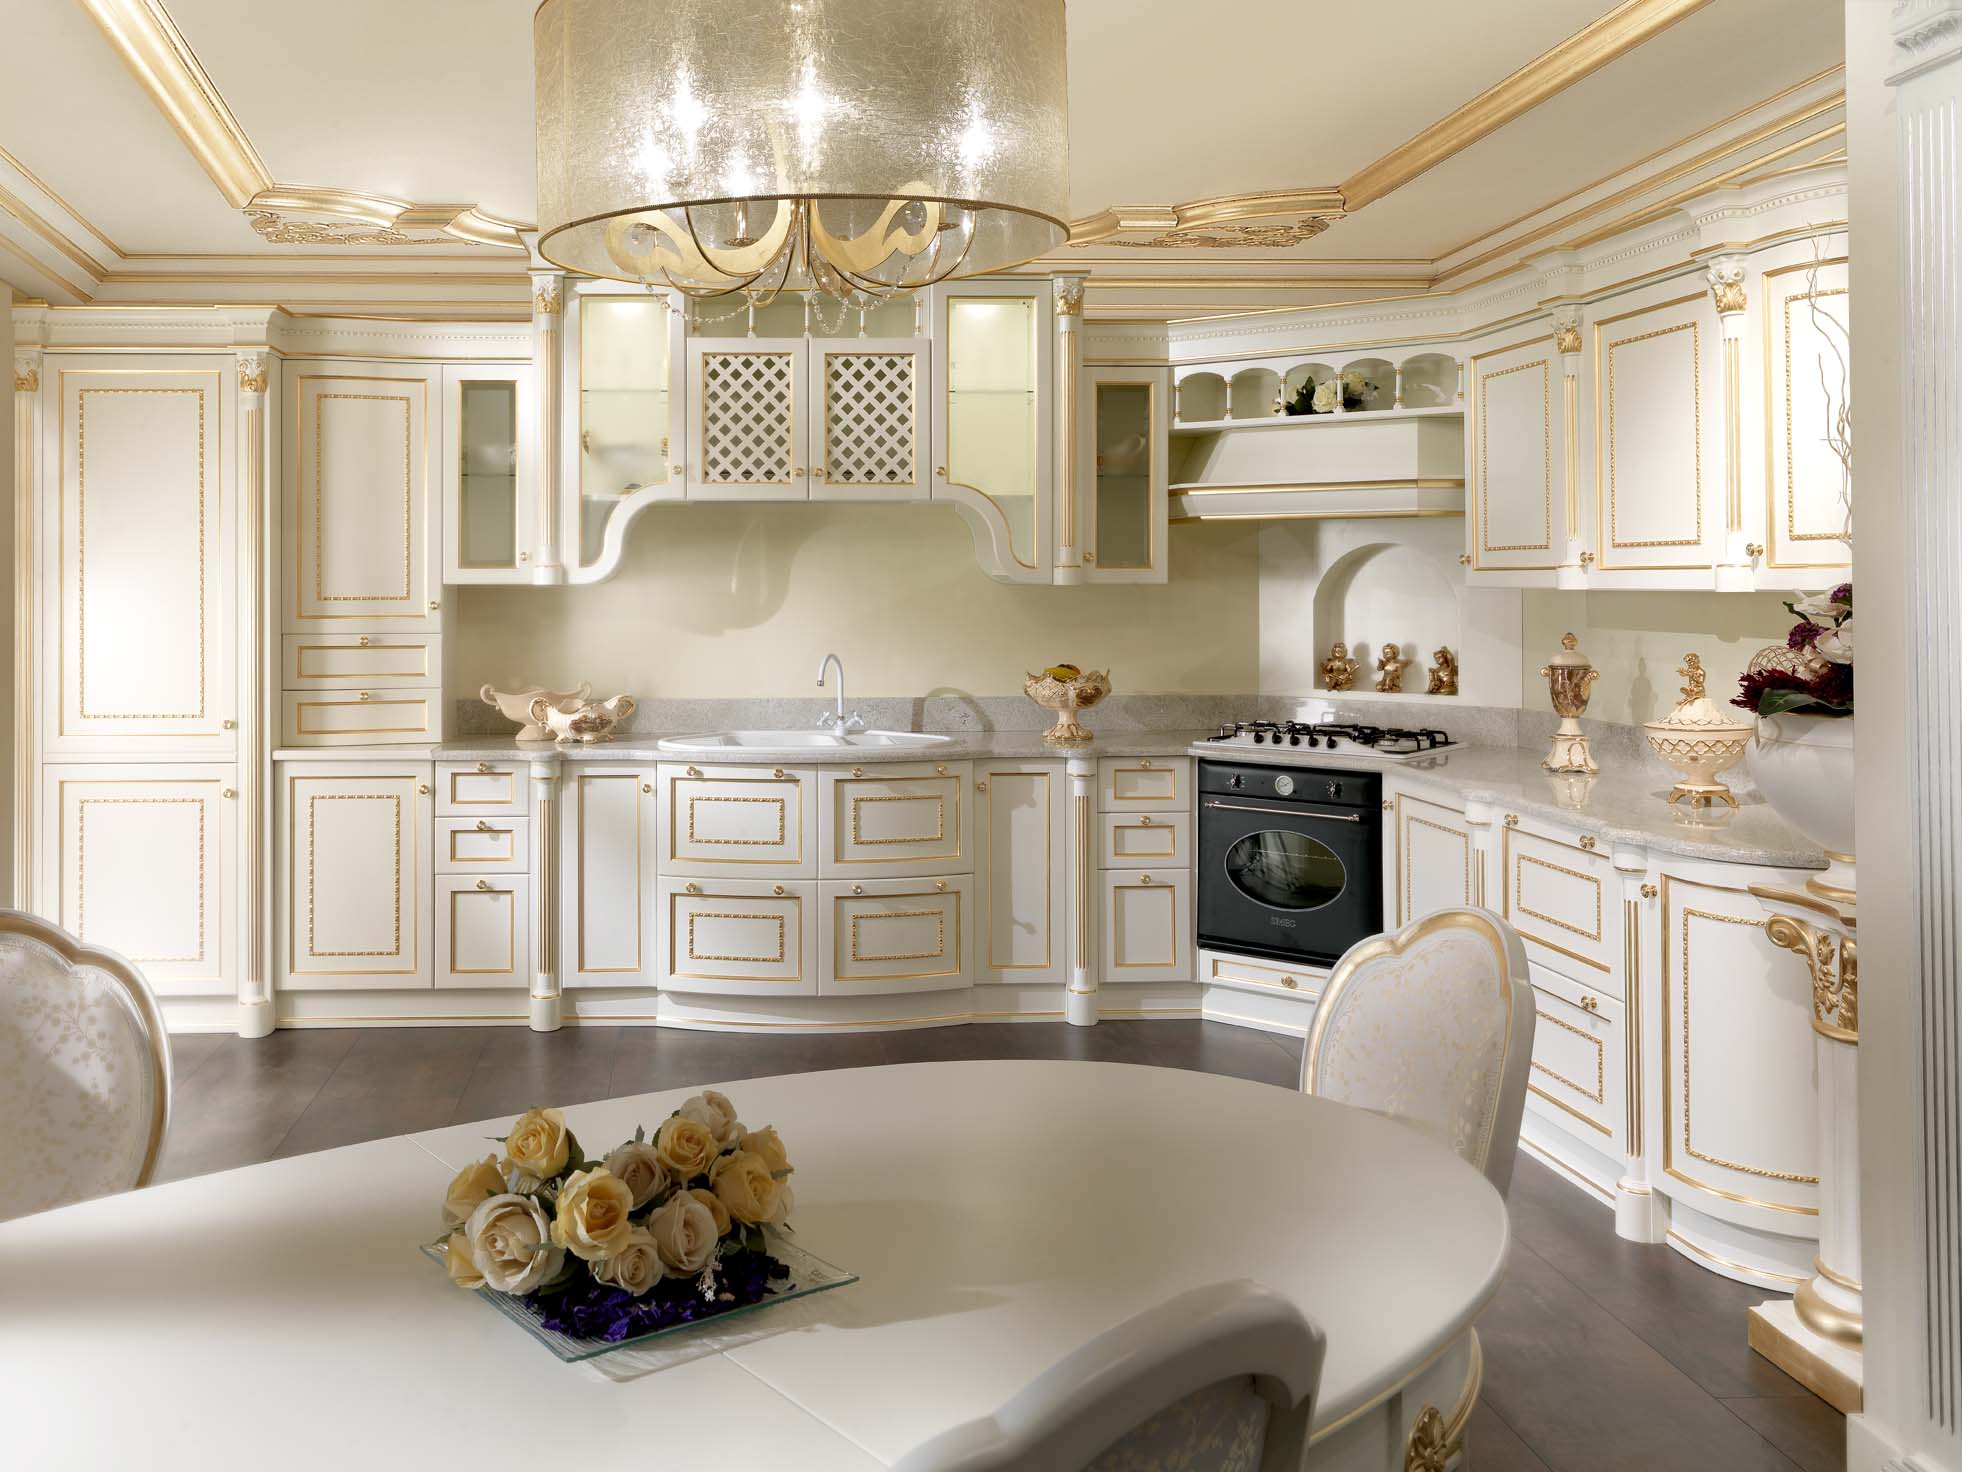 Interiér bielej kuchyne so zlacenými detailmi.